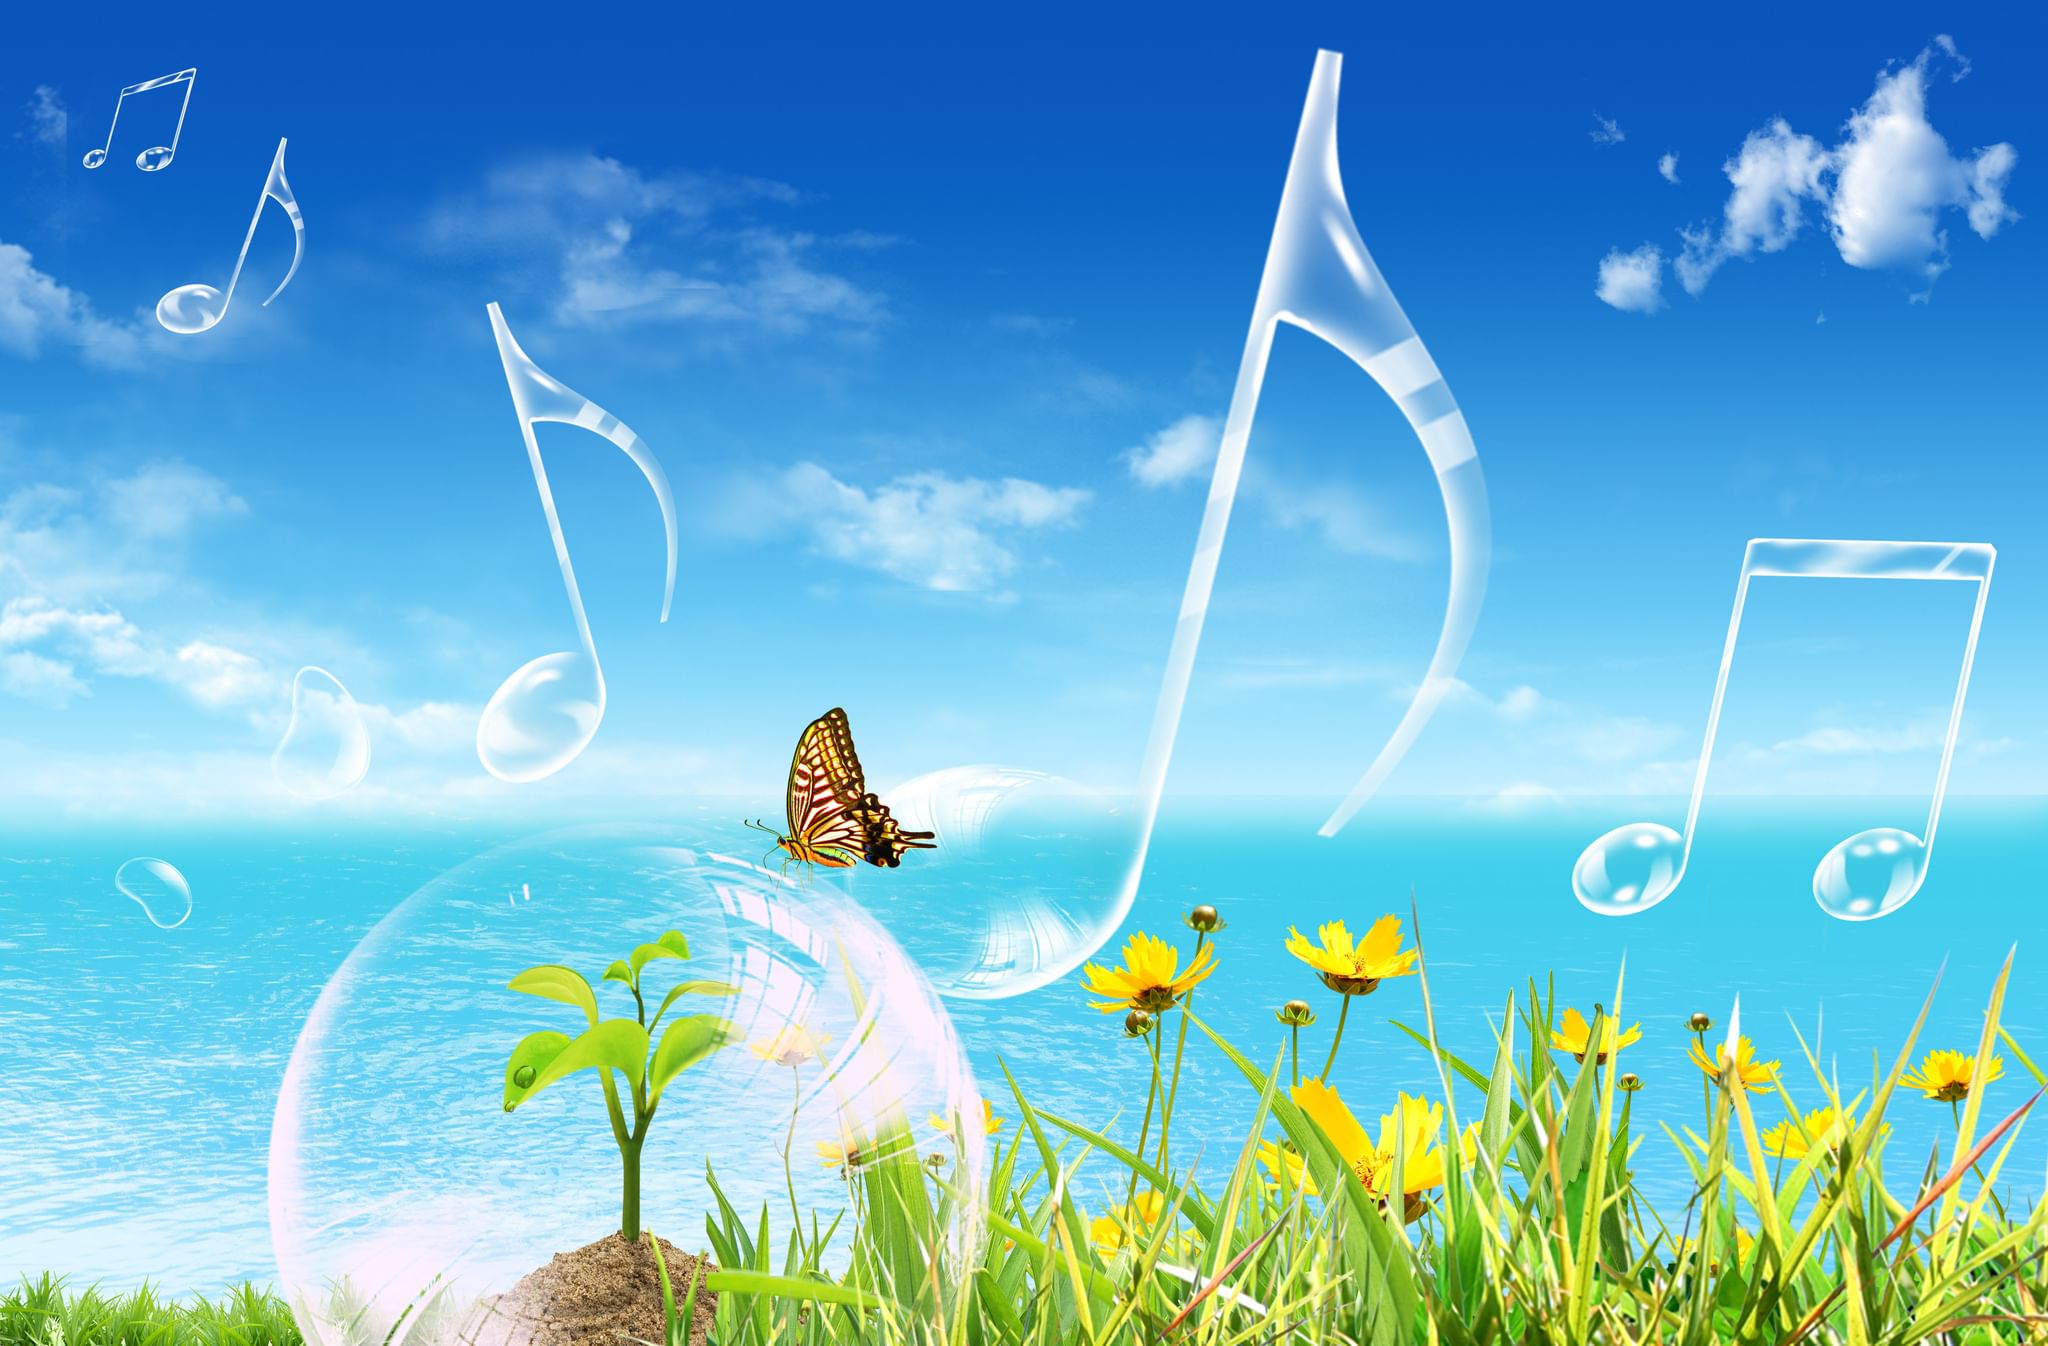 Музыка про мир. Лето. Музыкальное лето. Музыкальный пейзаж. Летнее настроение.